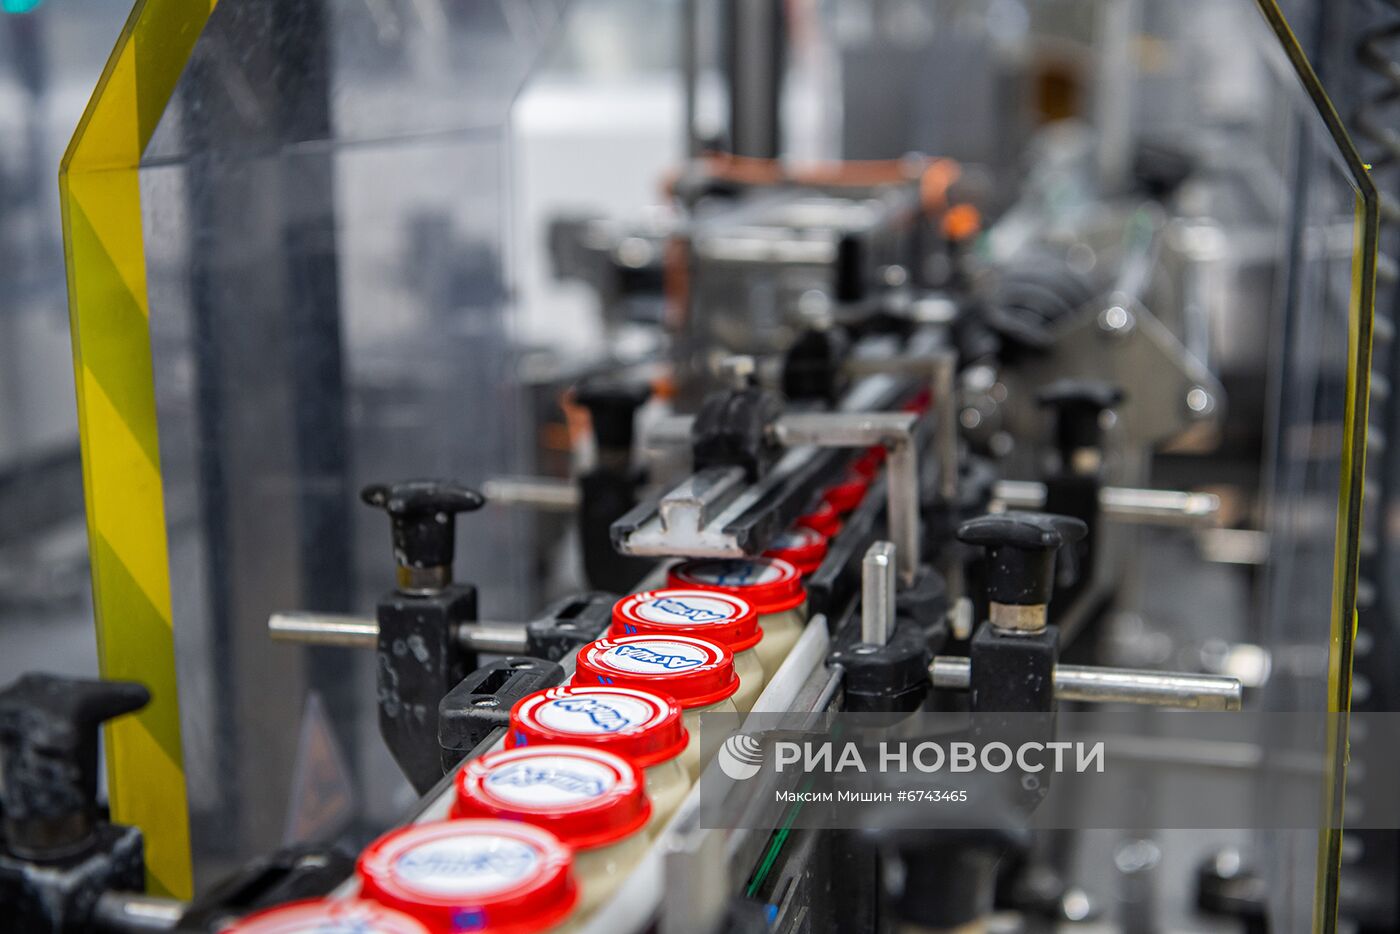 Мэр Москвы С. Собянин осмотрел новые линии по производству детского питания на Царицынском молочном комбинате